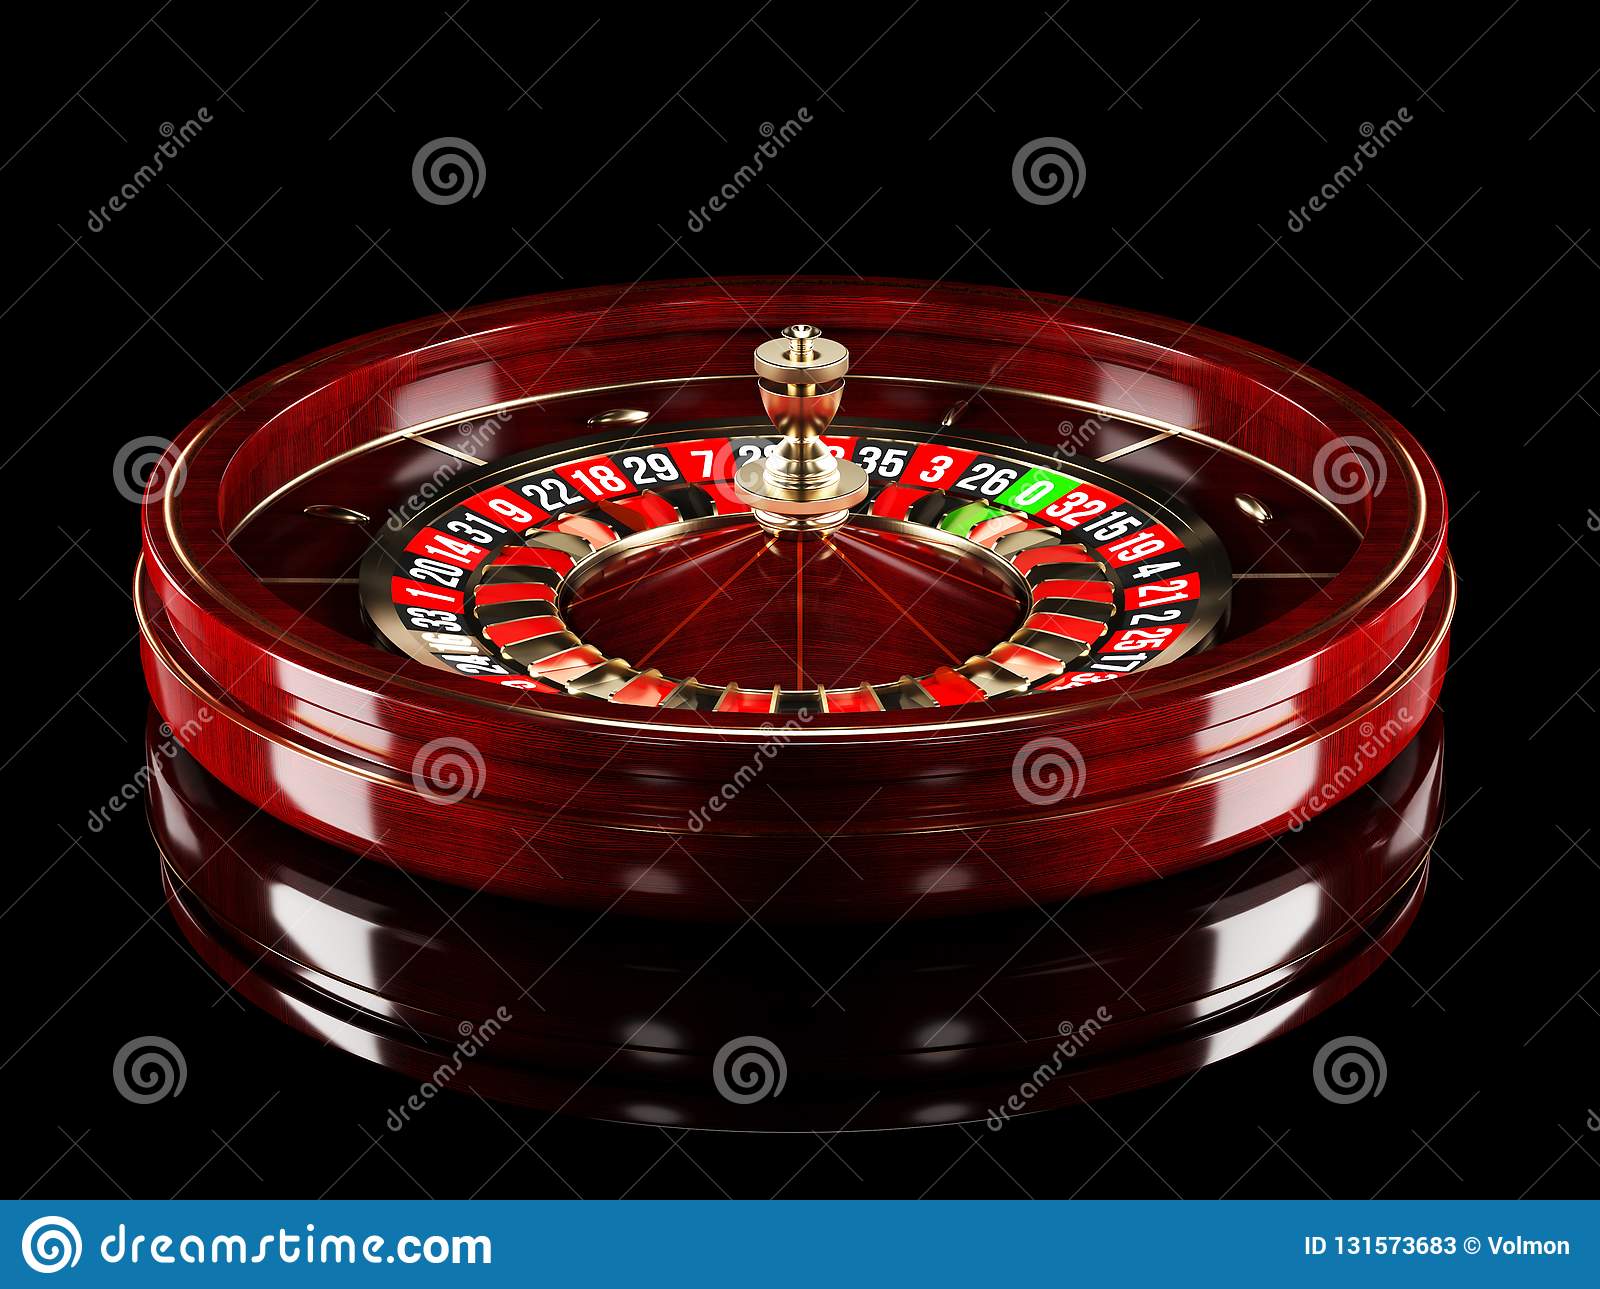 Betfair casino bet 10 get 60